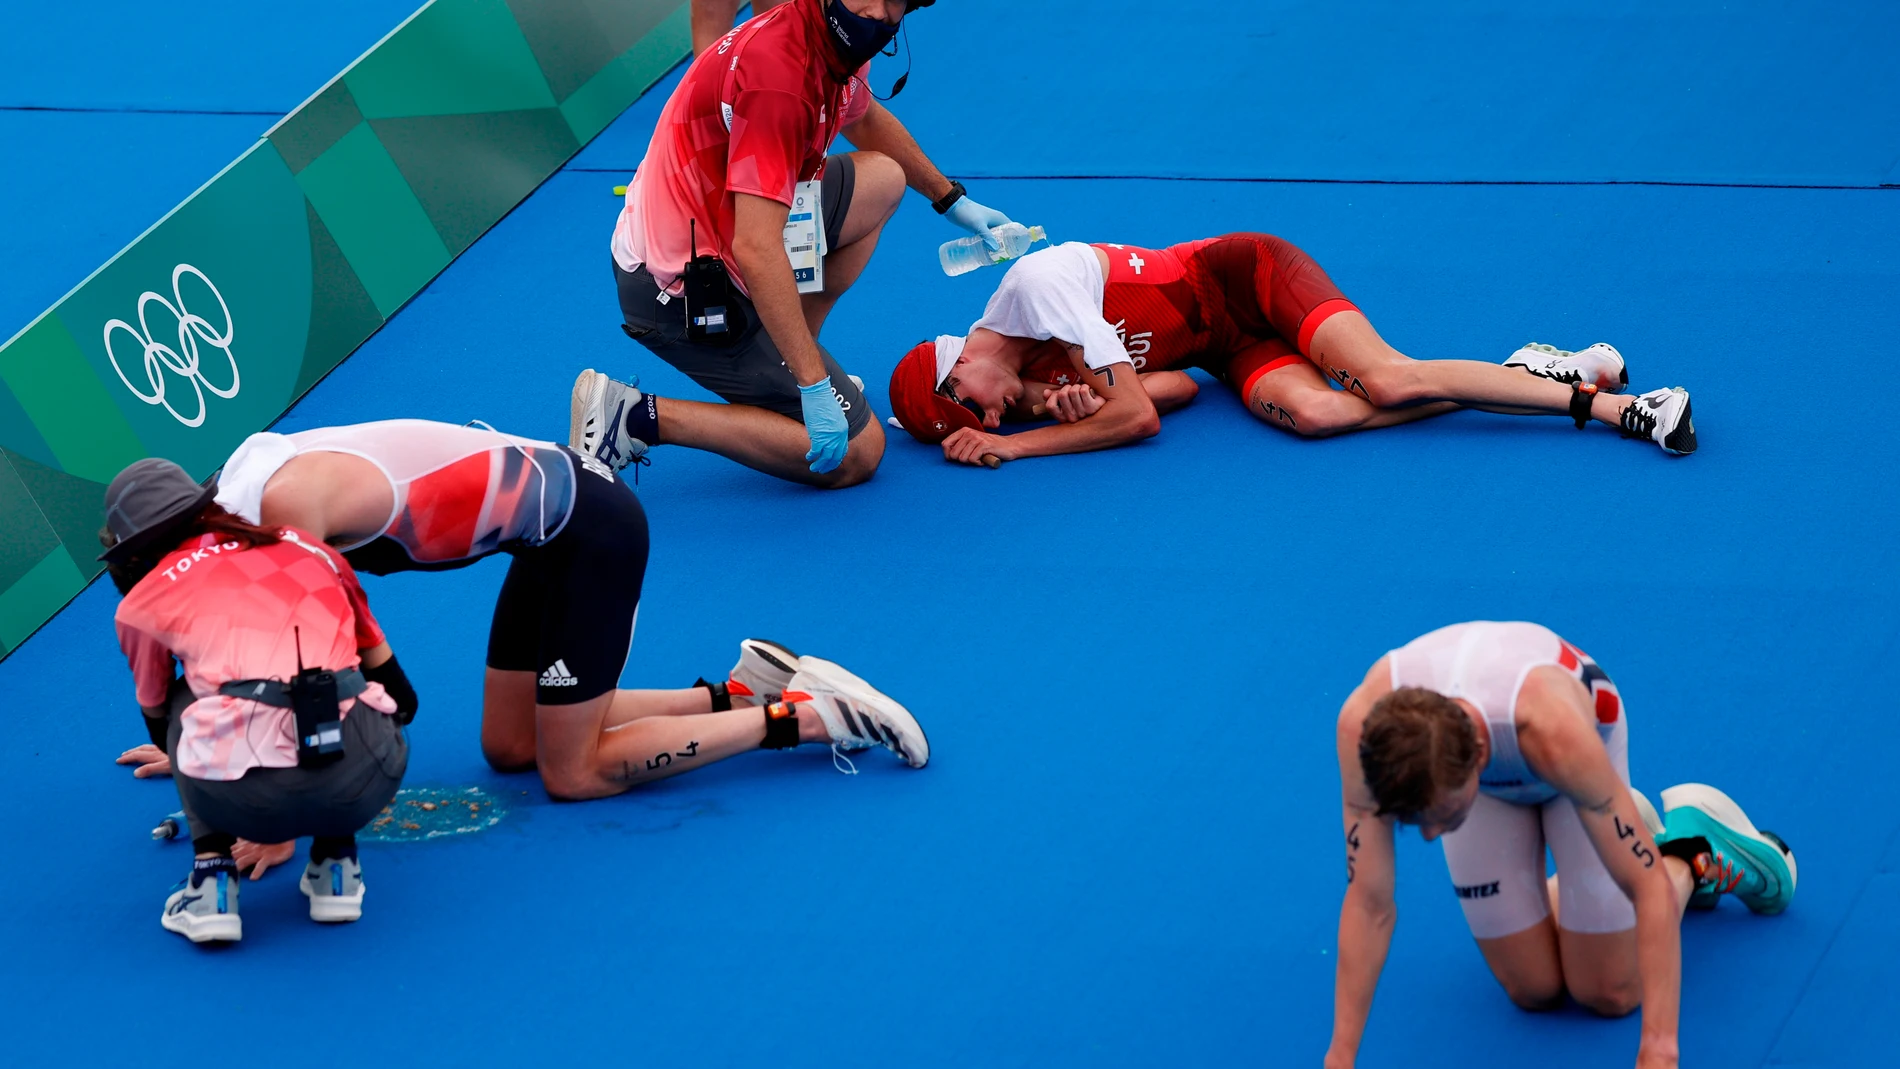 Jonathan Brownlee (i) de Gran Bretaña, Max Studer (c) de Suiza y Casper Stornes de Noruega descansan en el suelo tras cruzar la meta del triatlón masculino durante los Juegos Olímpicos 2020